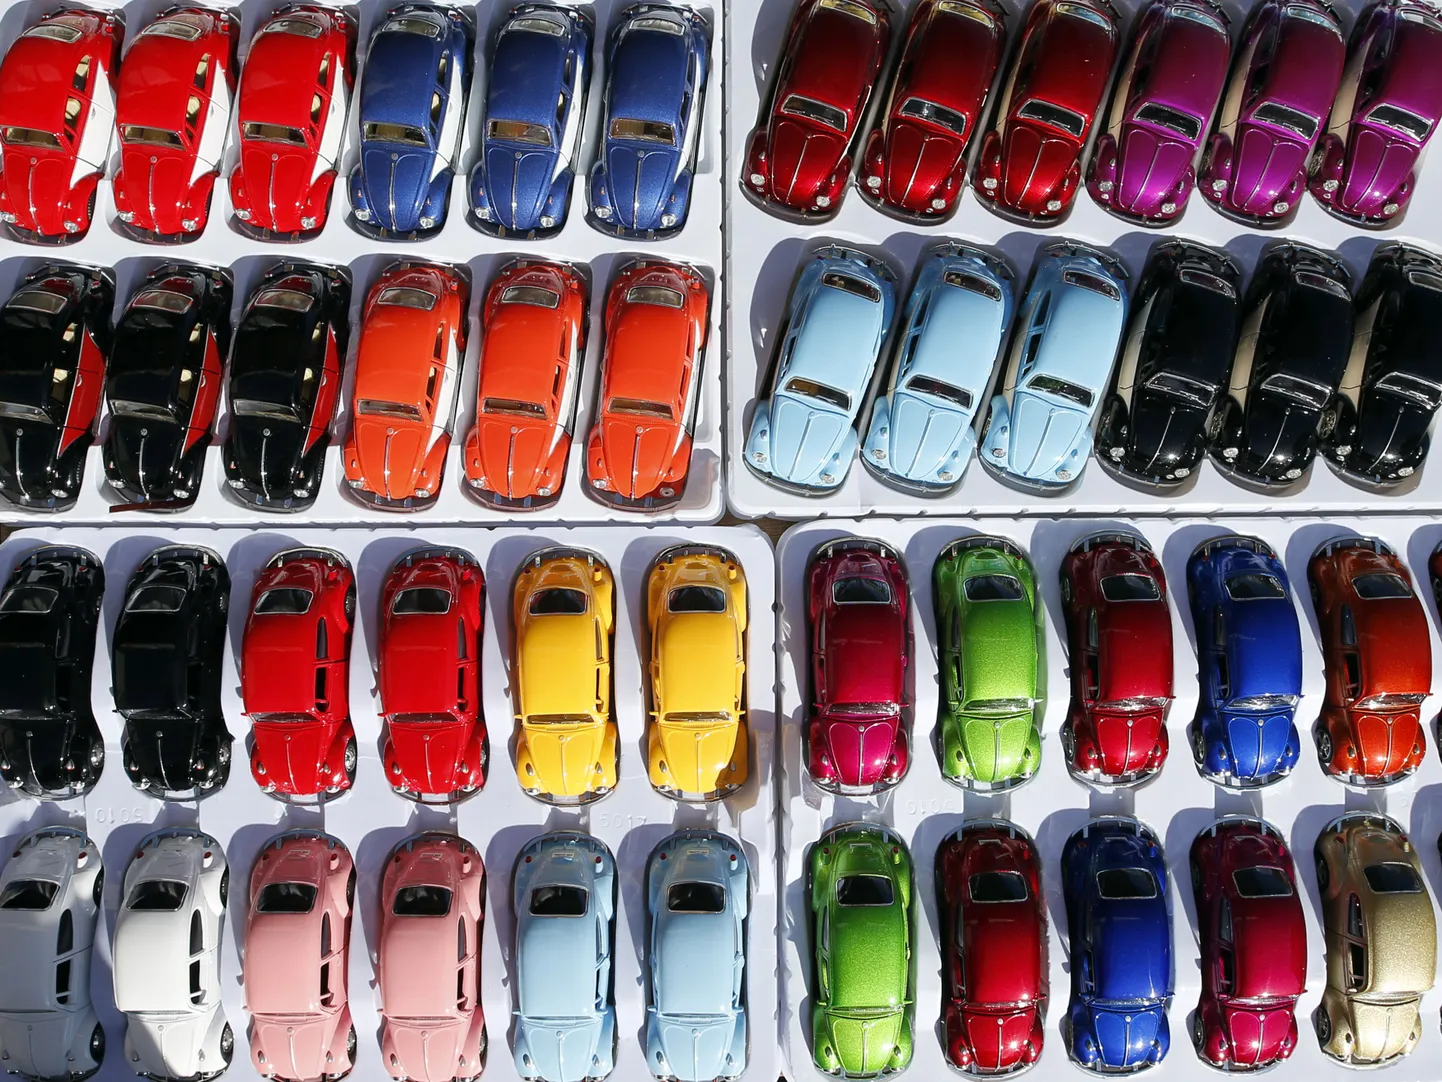 Volkswagen Põrnika miniatuursed mudelid.